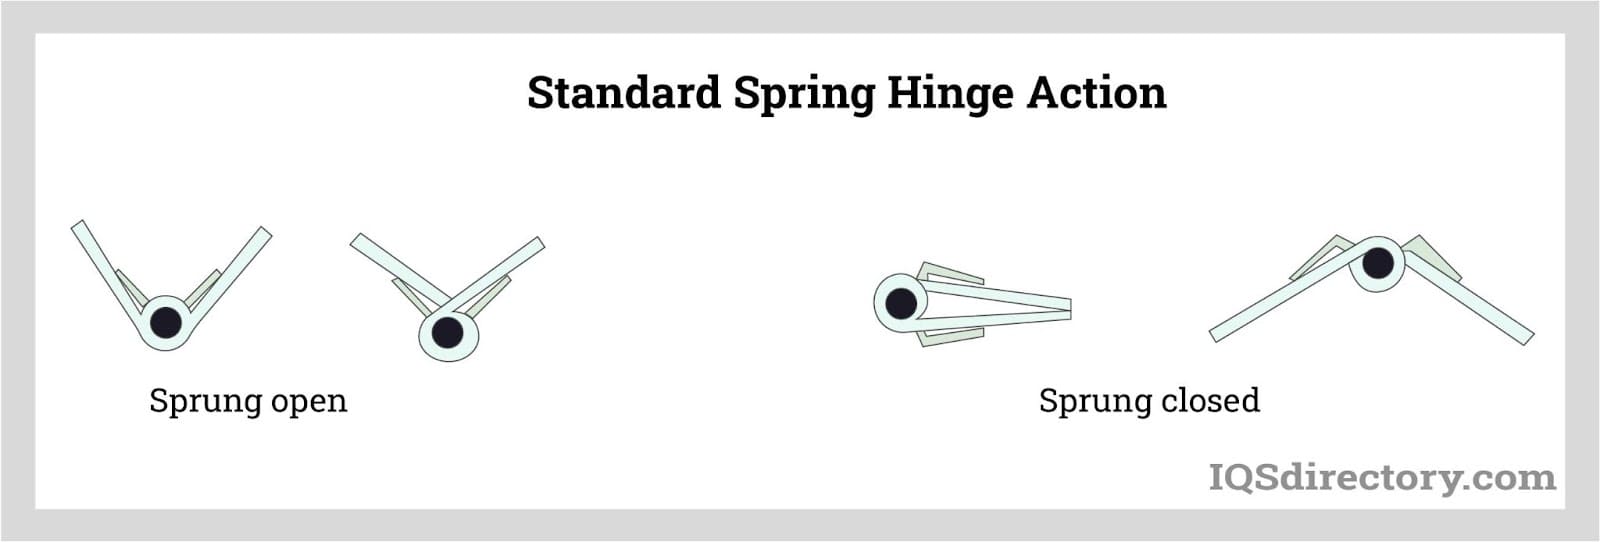 Standard Spring Hinge Action